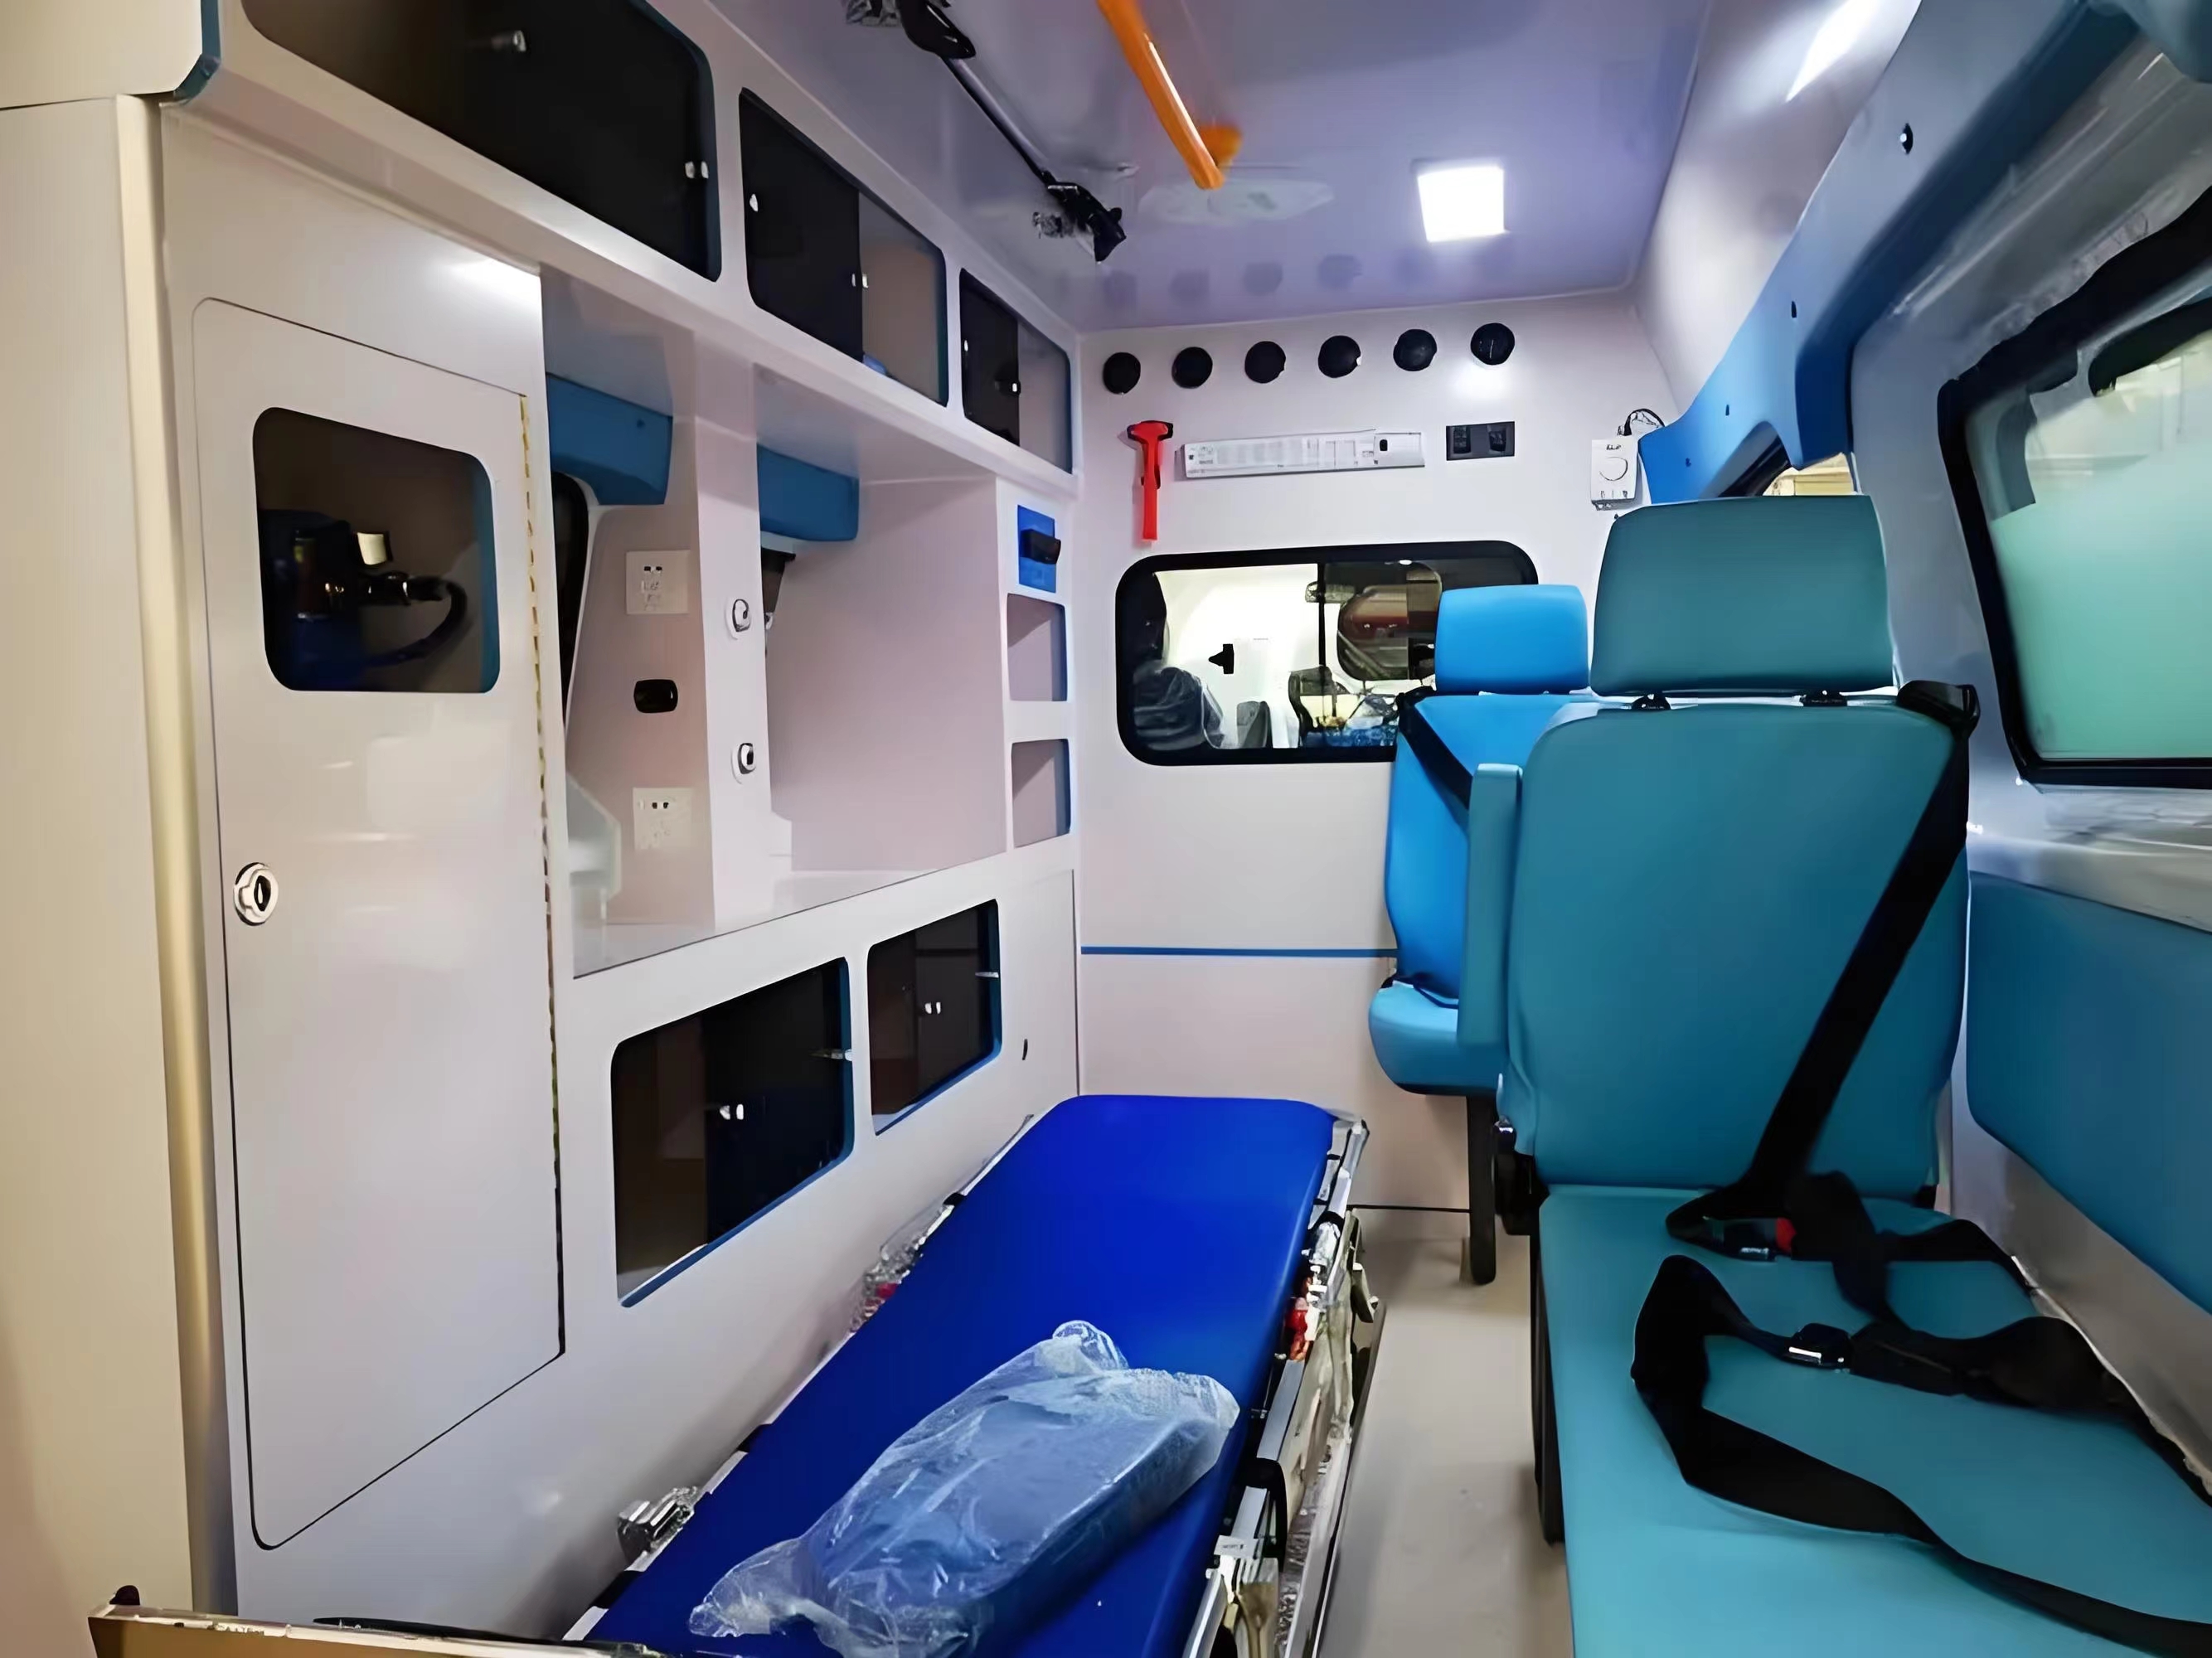 库尔勒跨省病人转运-120救护车出租--24小时服务